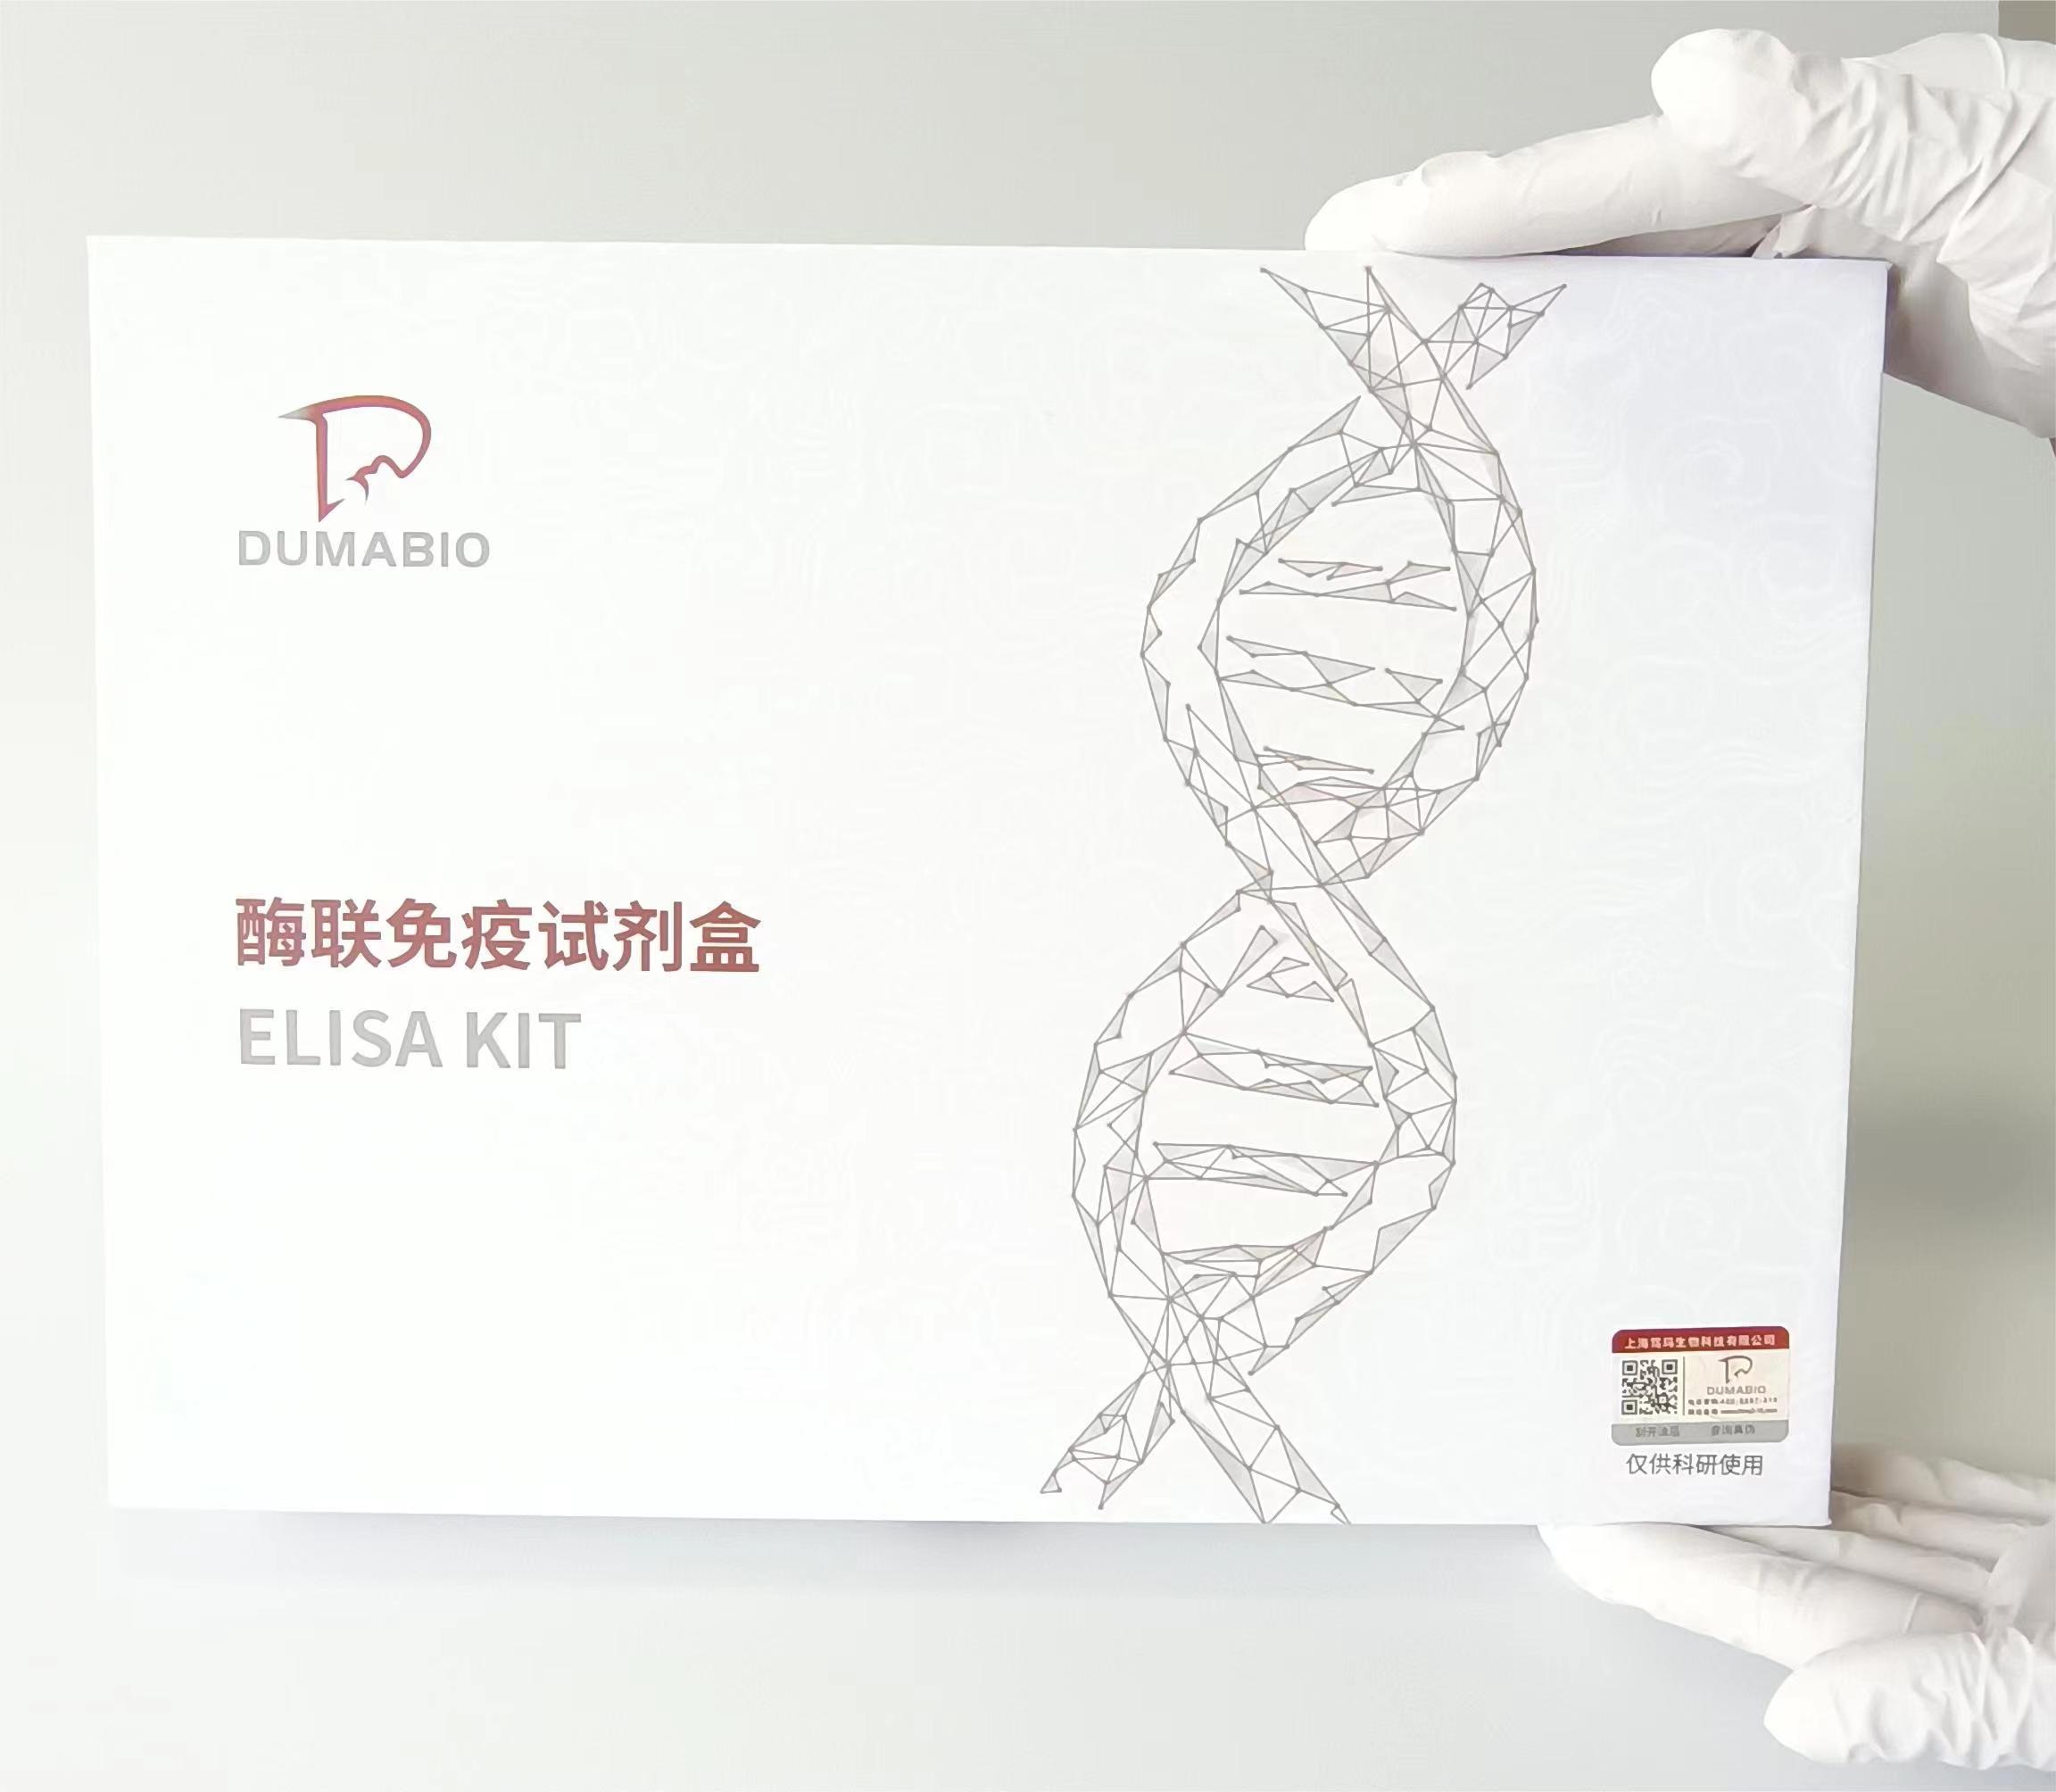 人同型半胱氨酸(Hcy)ELISA试剂盒